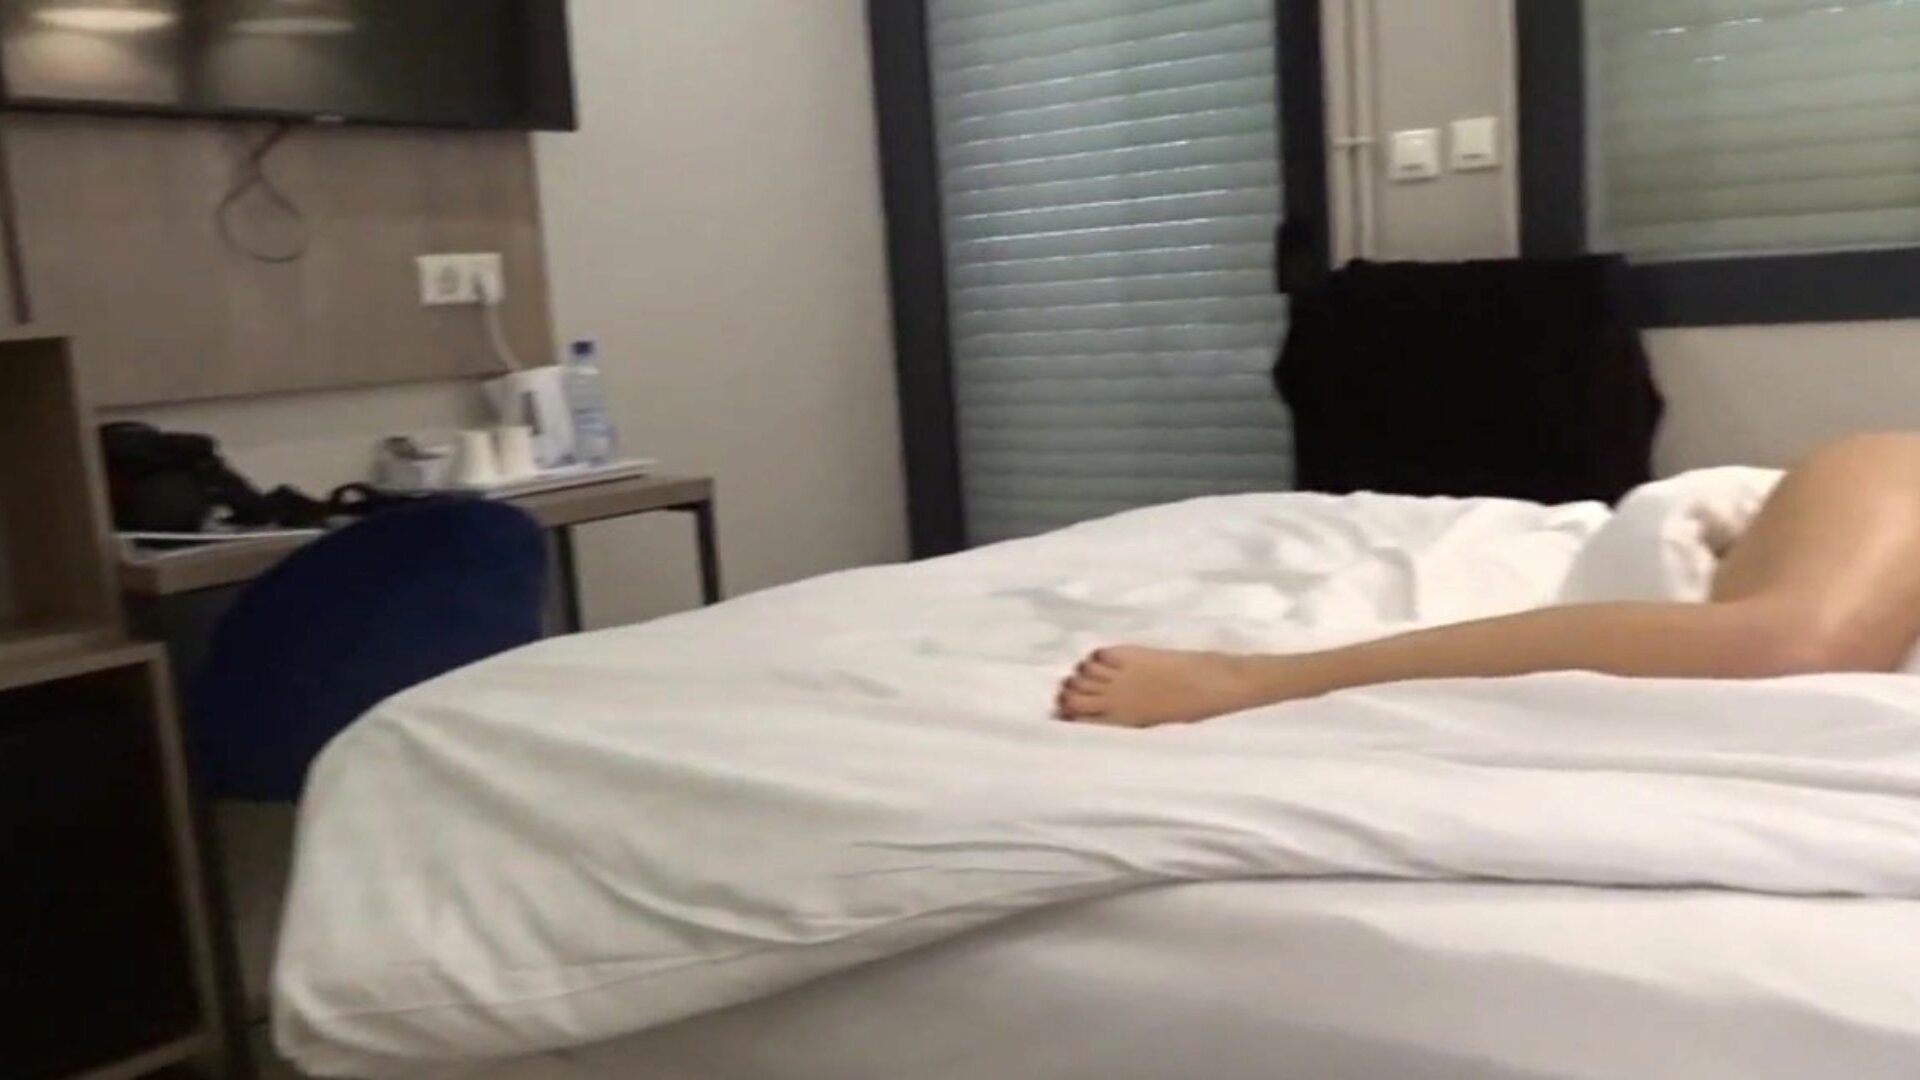 carla-c desnuda en el video del hotel donde me desnudo en mi sofá cama en una habitación de hotel y en el baño